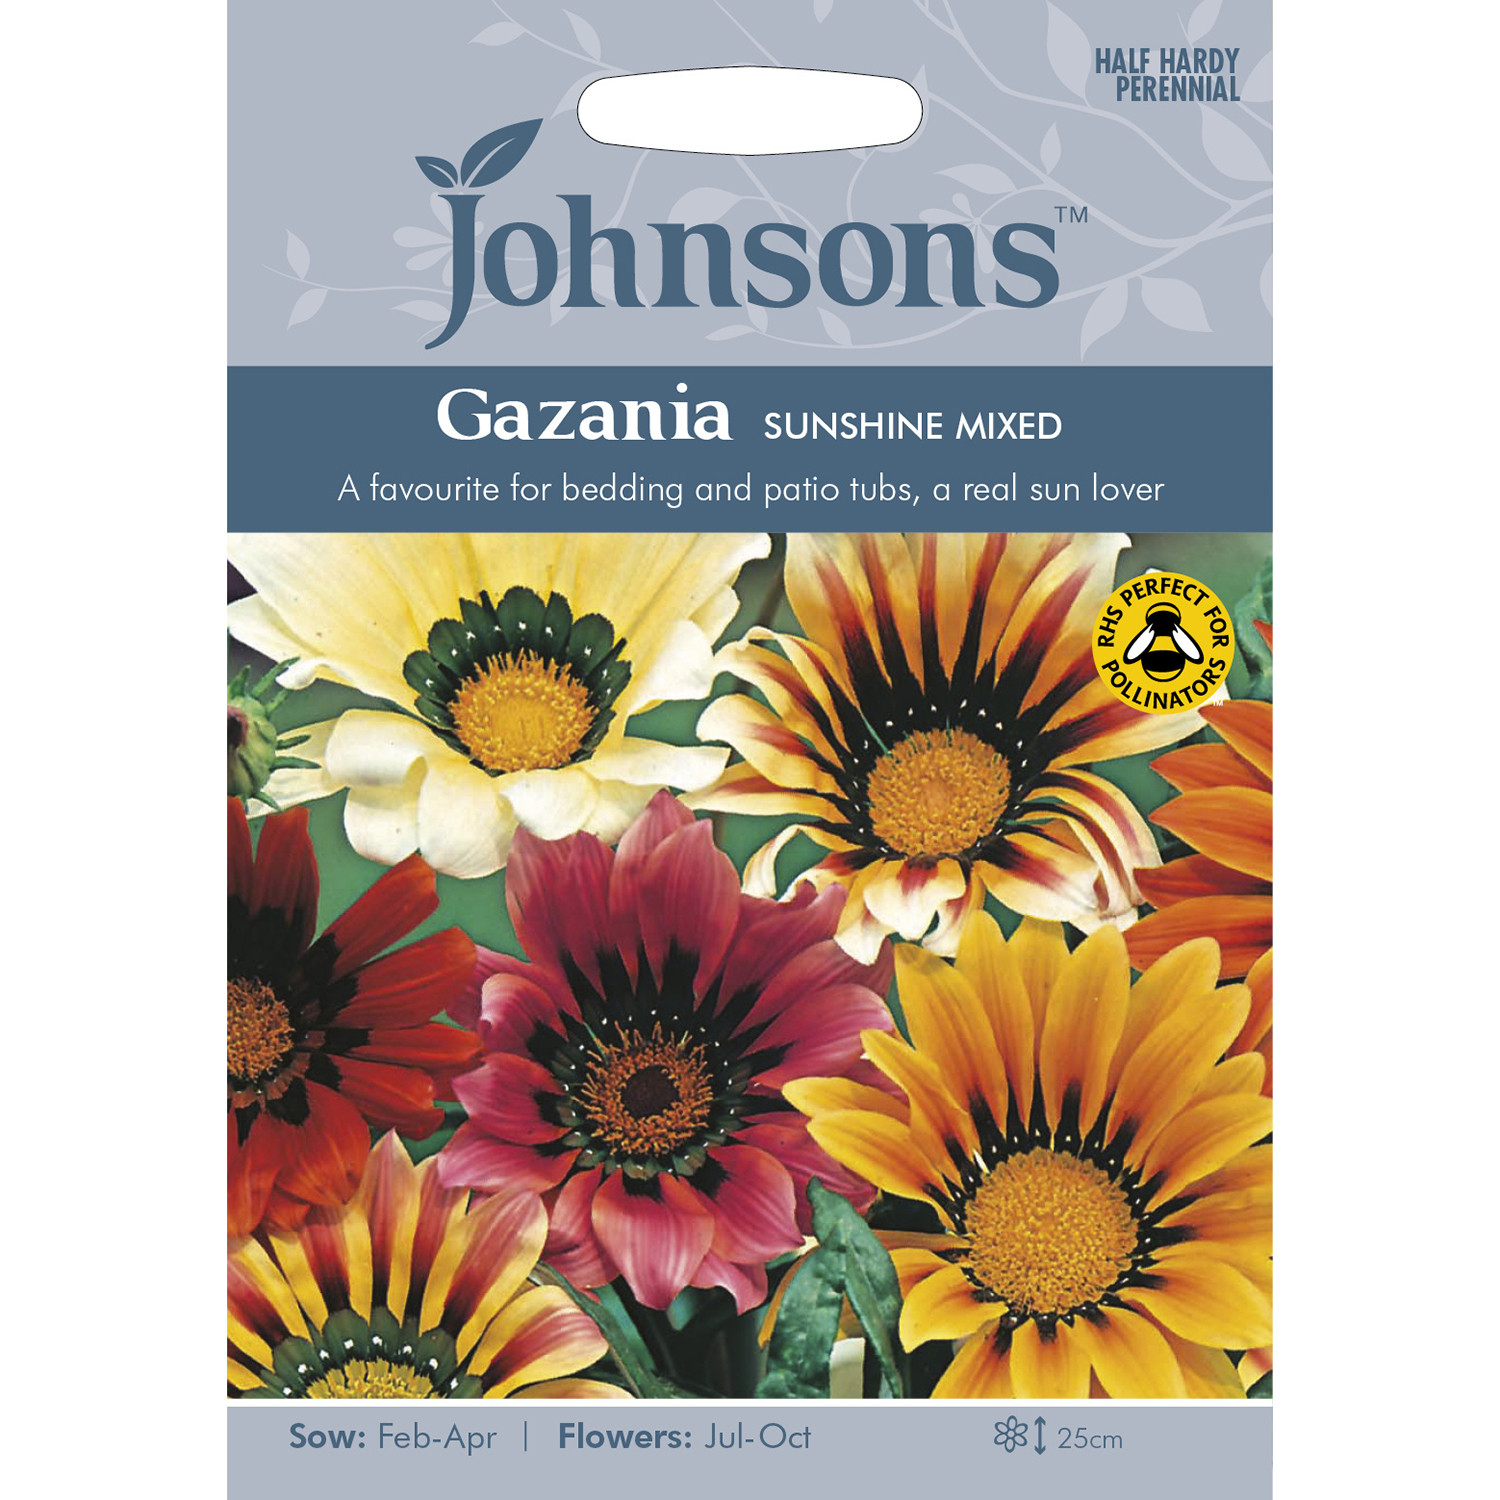 Johnsons Gazania Sunshine Mixed Flower Seeds Image 2